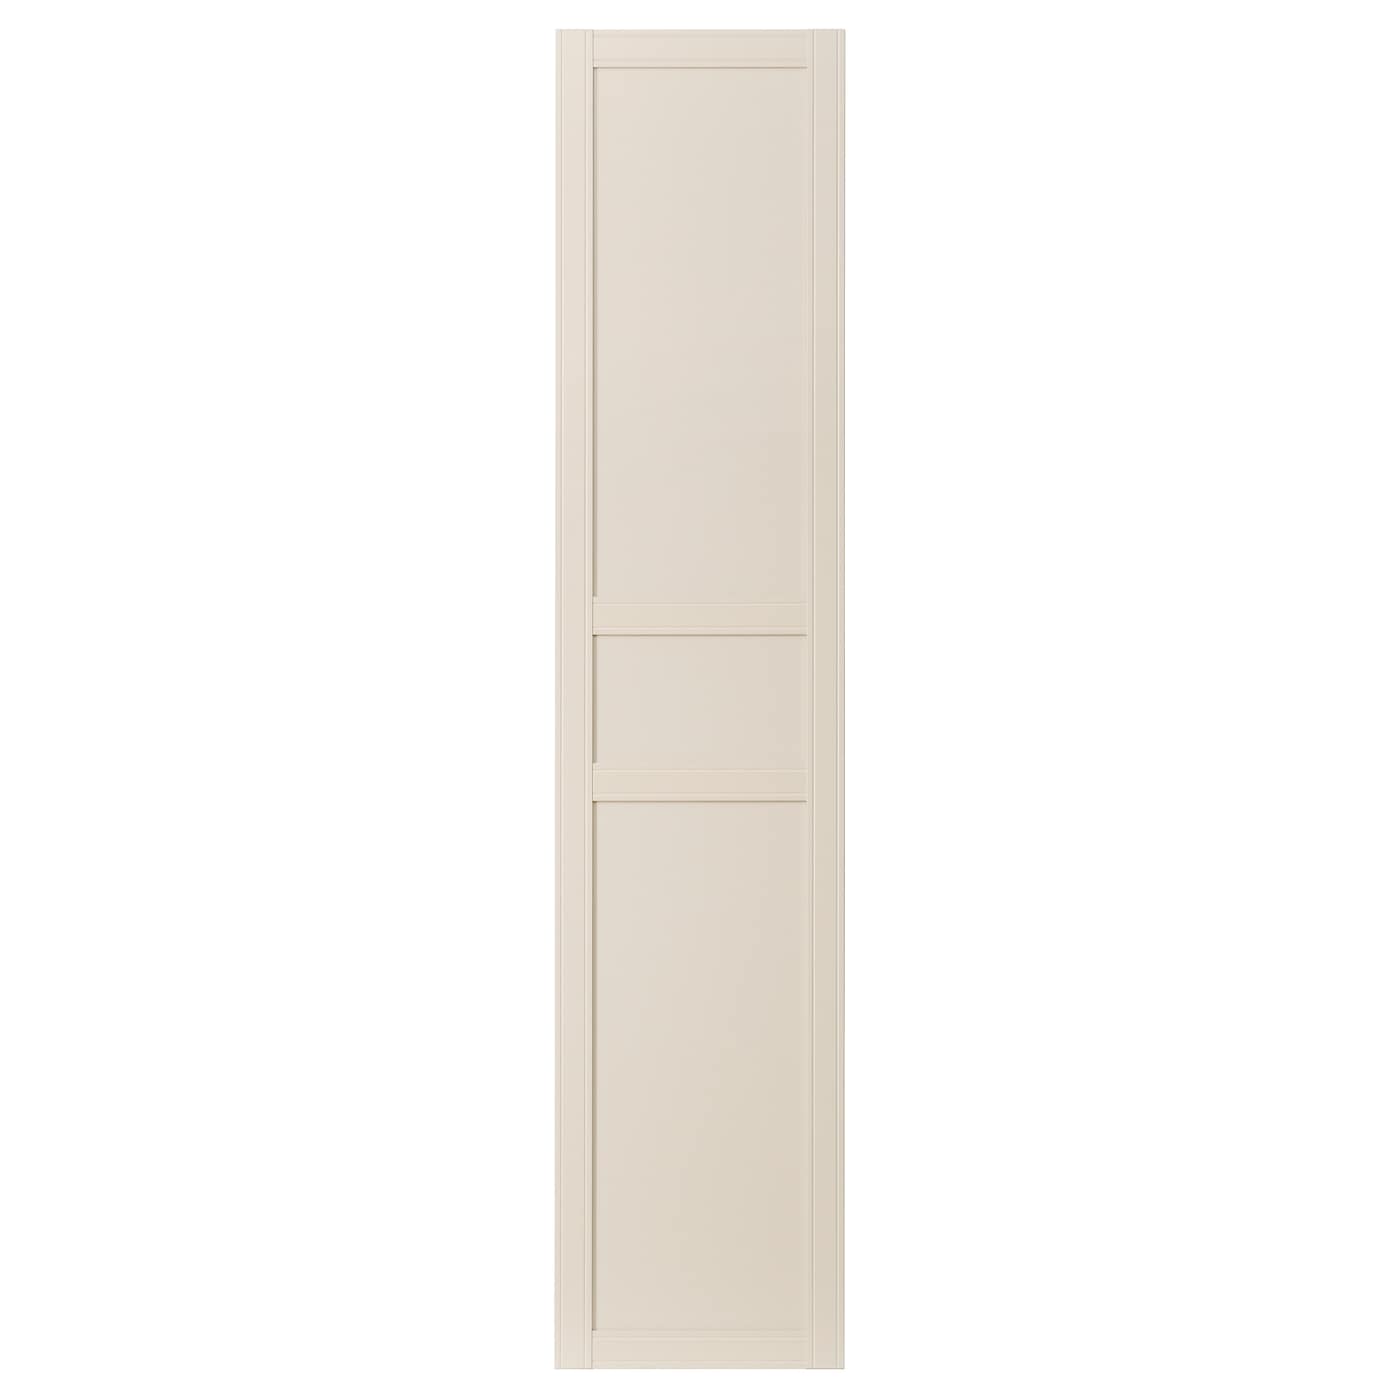 Дверь с петлями - IKEA FLISBERGET/ФЛИСБЕРГЕТ, 229х50 см, светло-бежевый ИКЕА